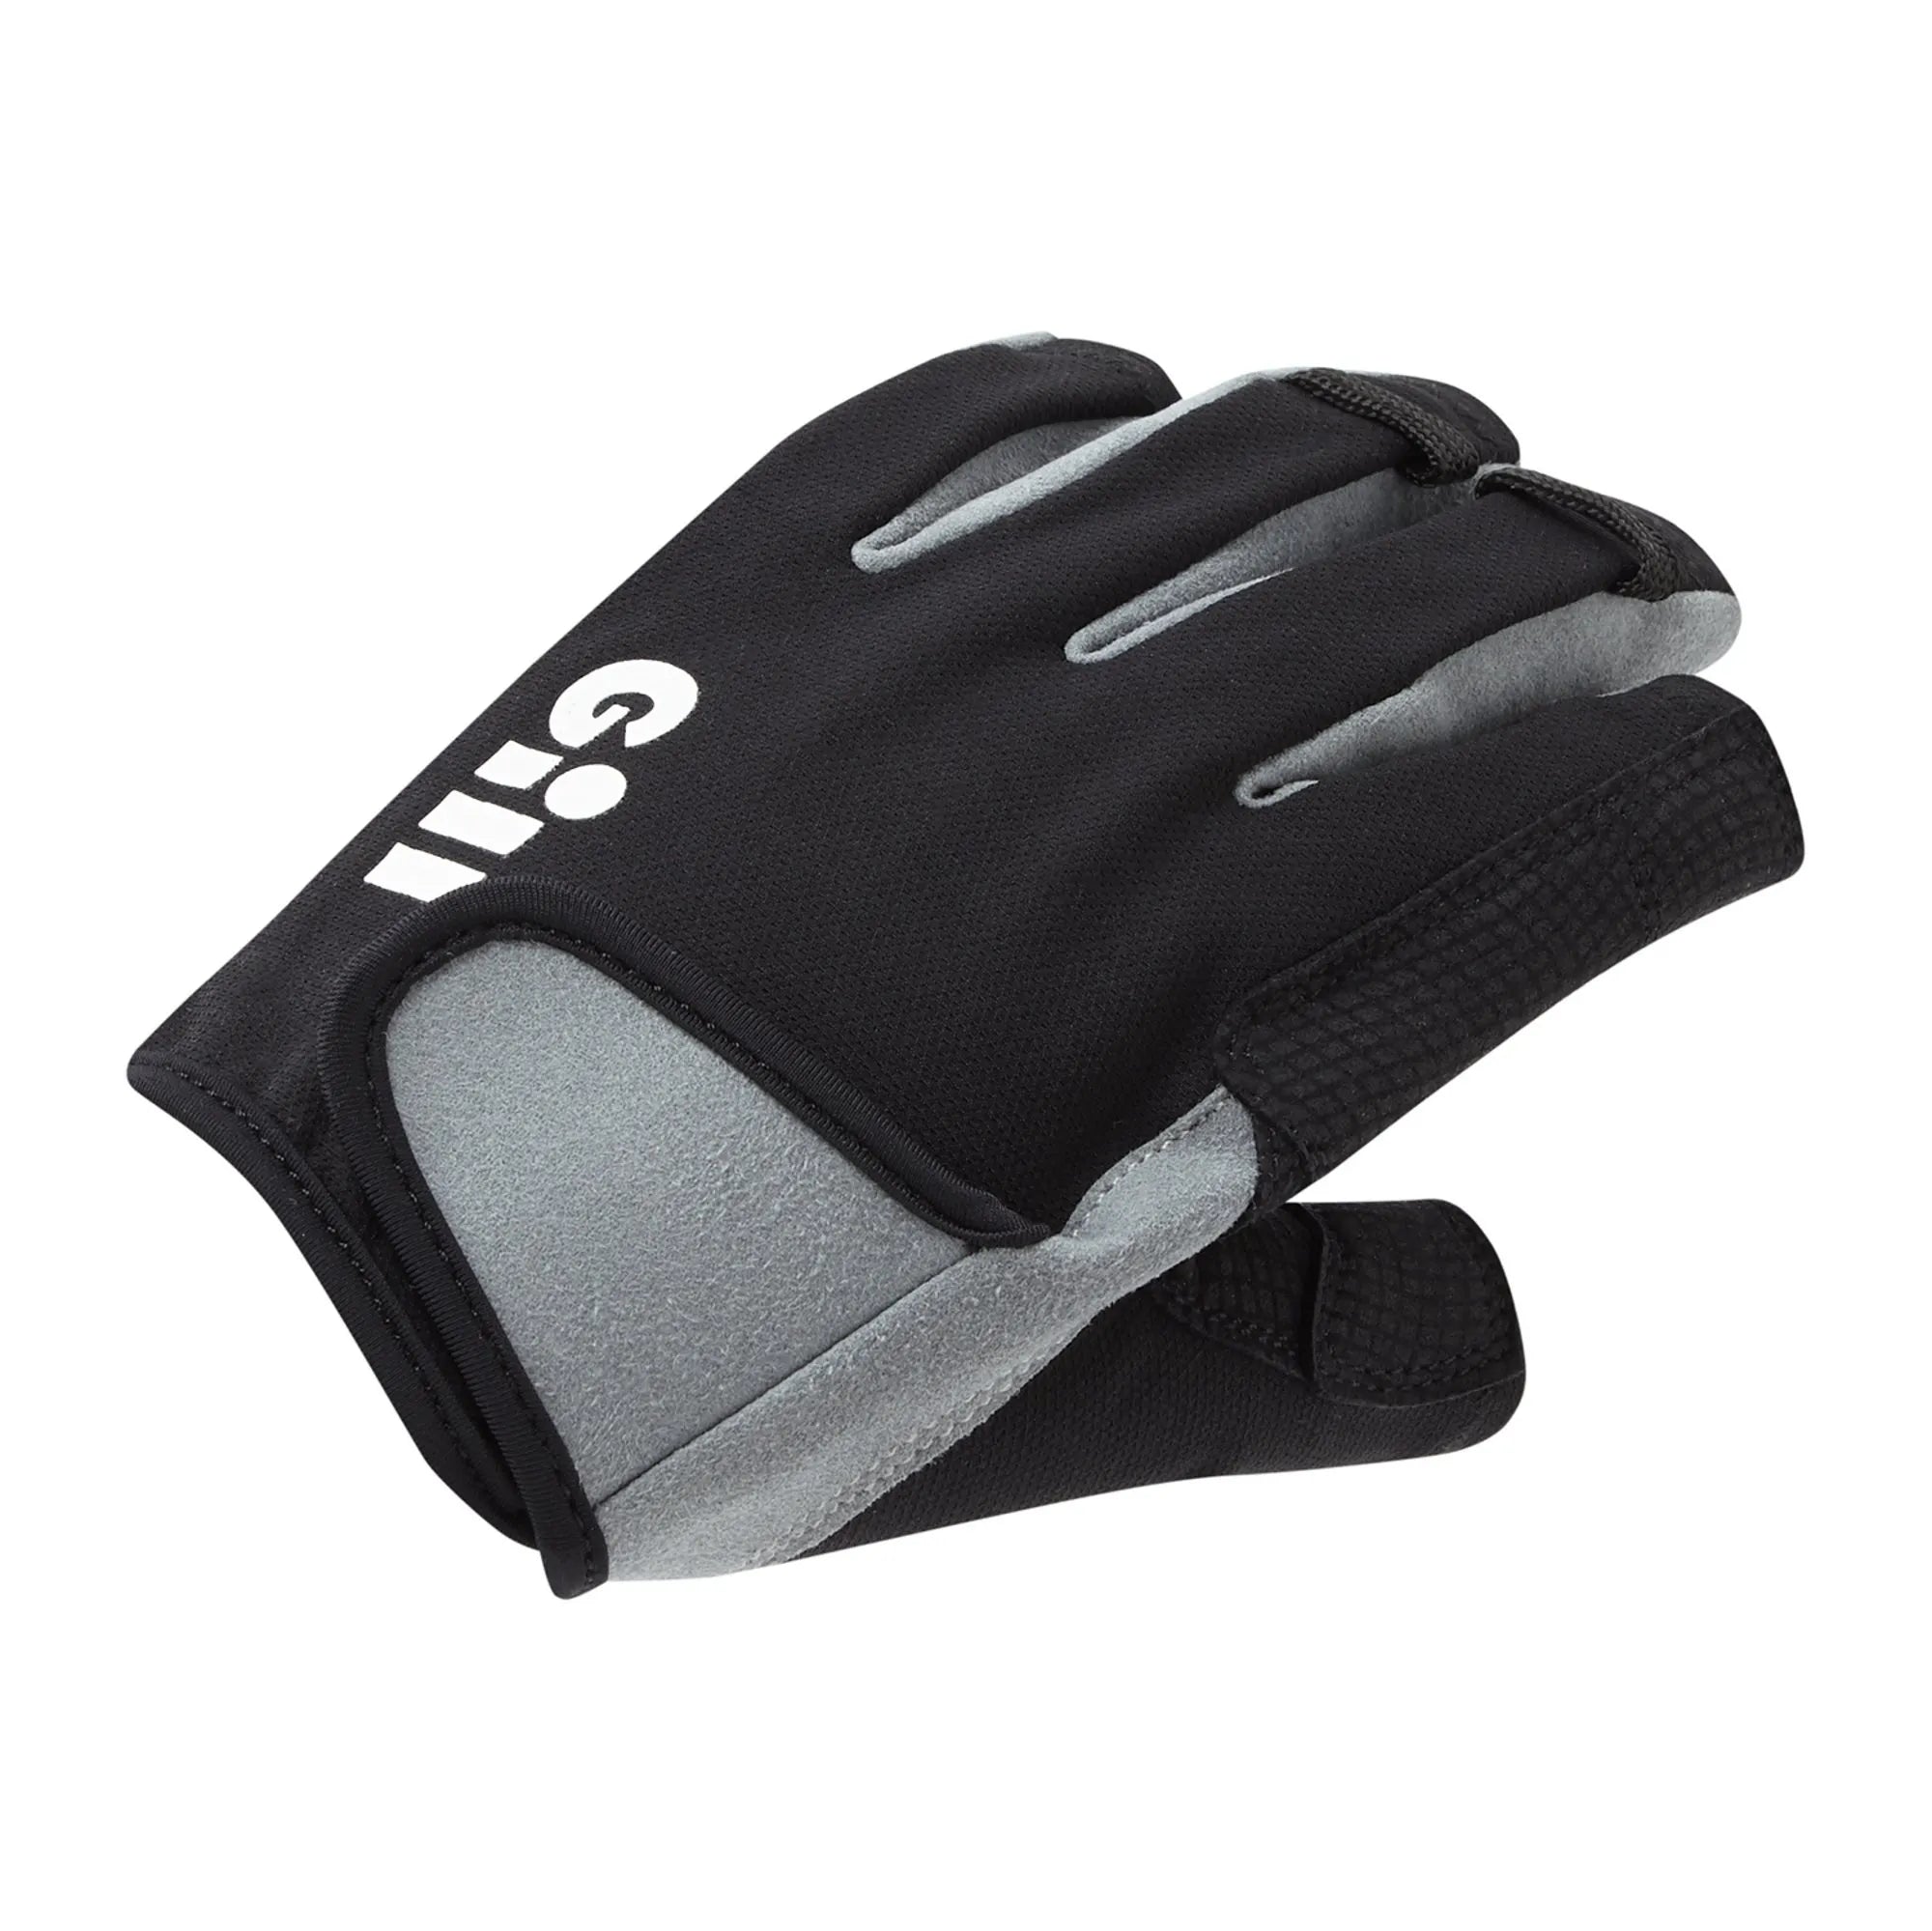 Deckhand Gloves (Short Finger) - Black